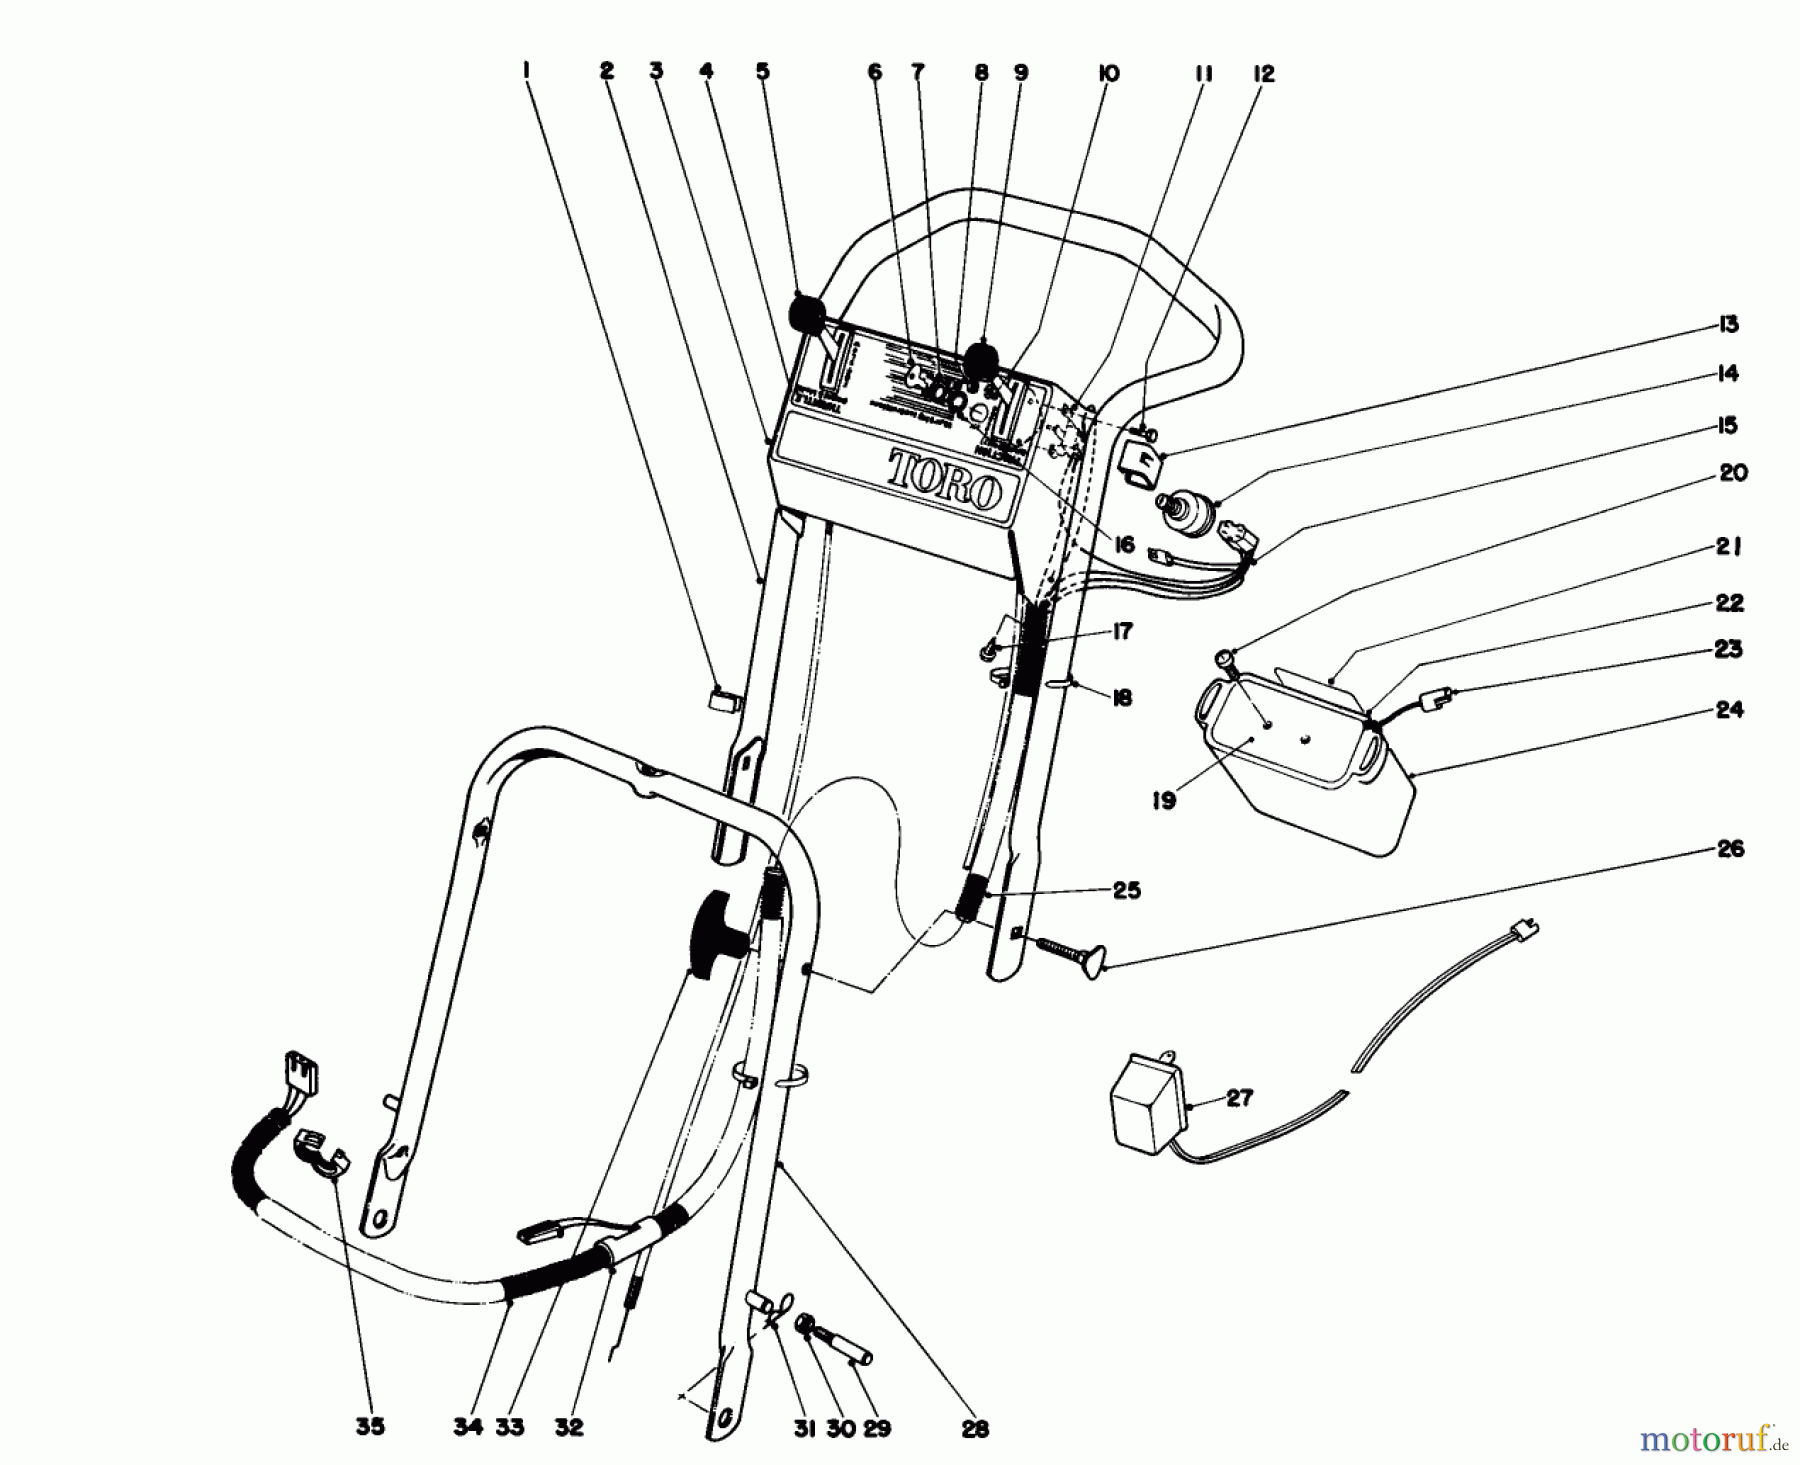  Toro Neu Mowers, Walk-Behind Seite 2 21738 - Toro Whirlwind Lawnmower, 1980 (0000001-0999999) HANDLE ASSEMBLY